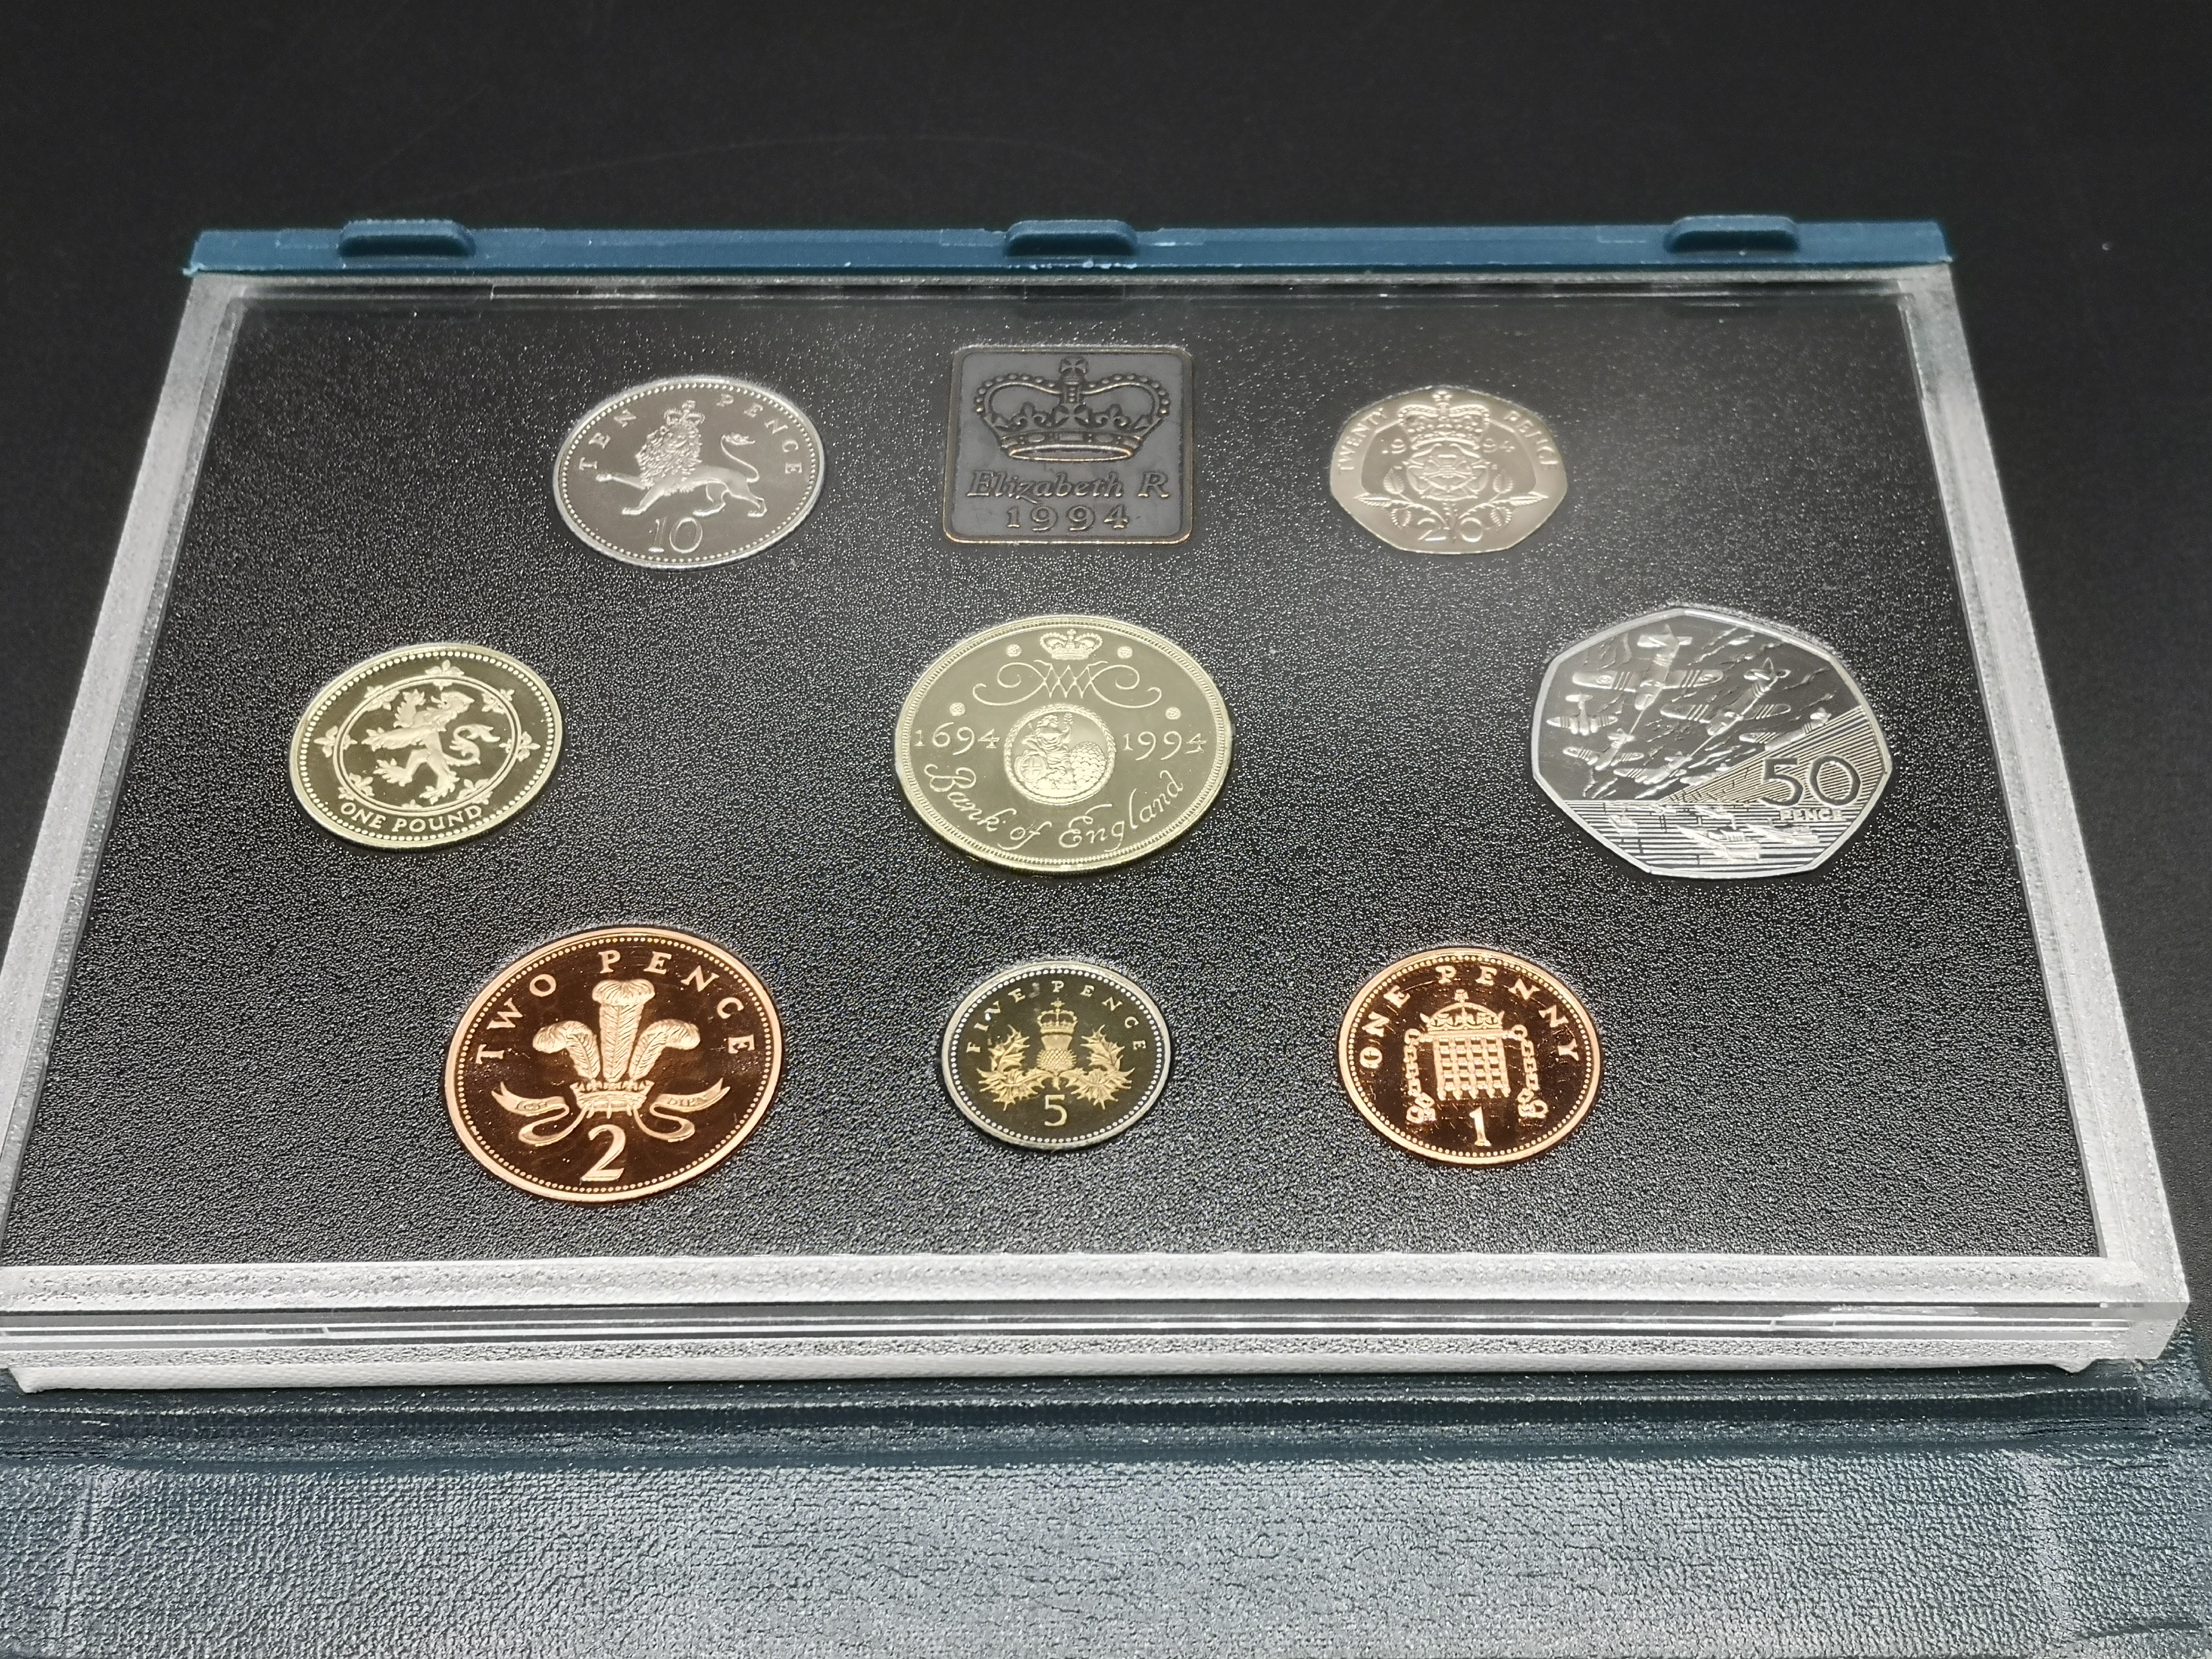 1994 Royal Mint proof set